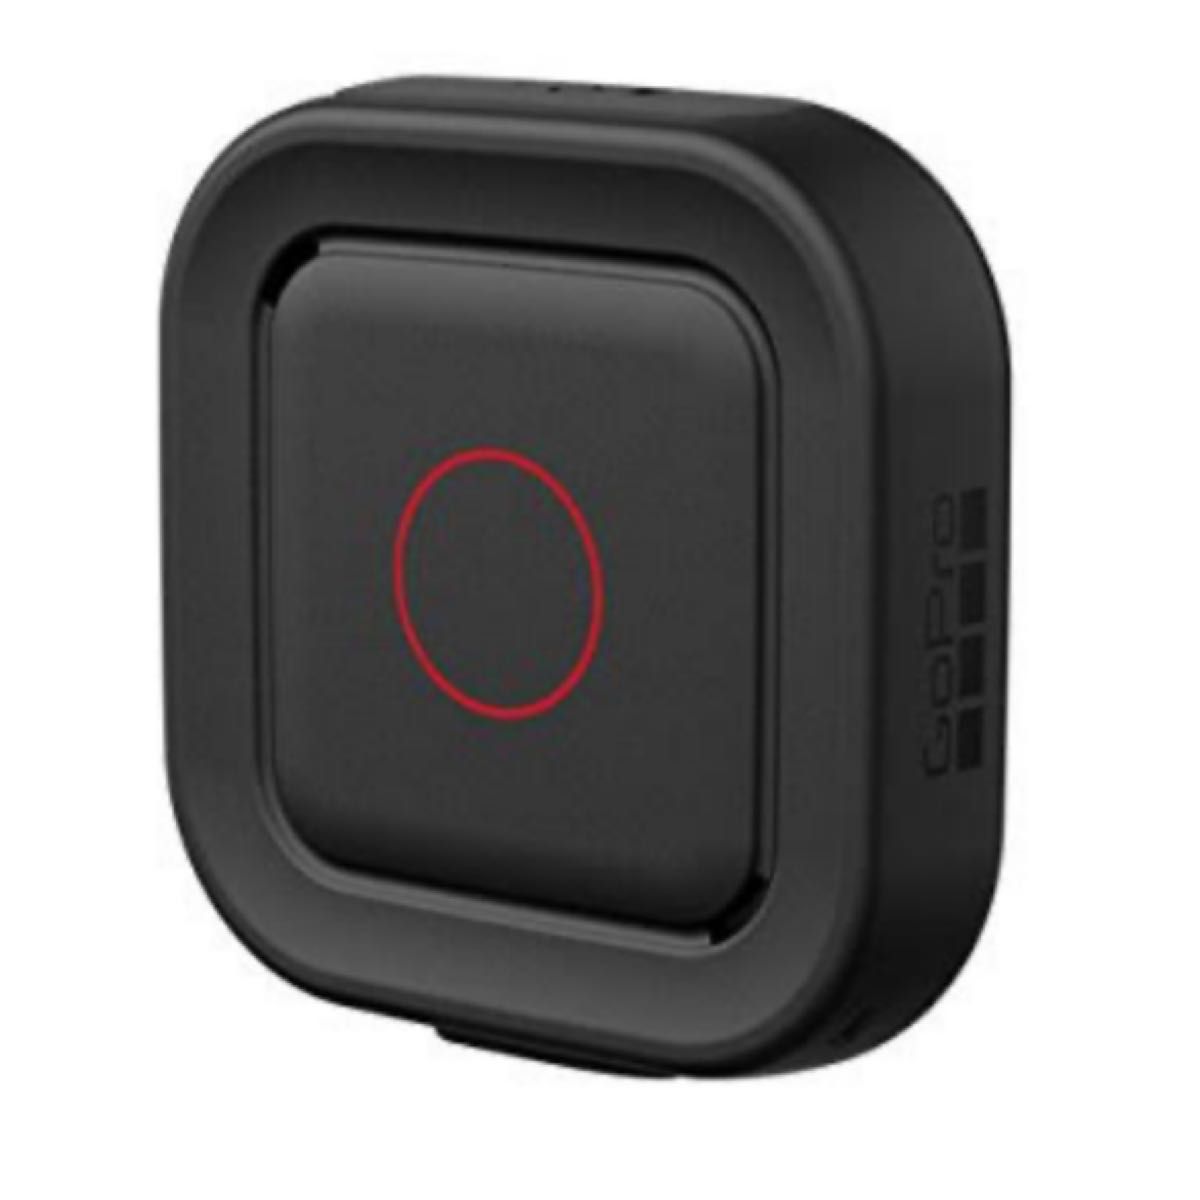  GoPro用アクセサリ Remo 防水音声認識機能付きリモート